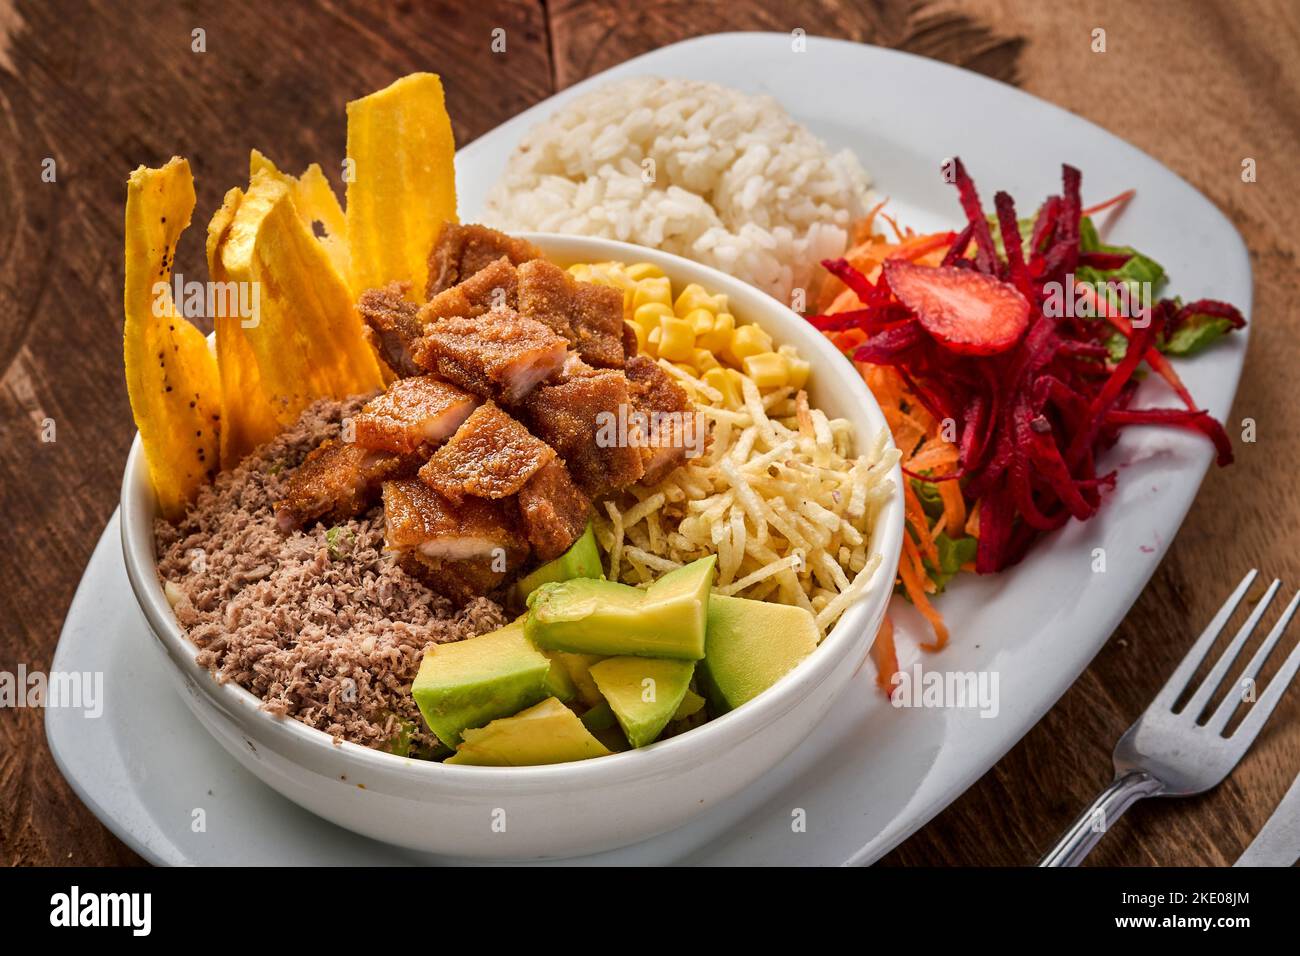 Vue de dessus d'une assiette avec un plat traditionnel de Bandeja Paisa avec salade de légumes sur une table en bois Banque D'Images